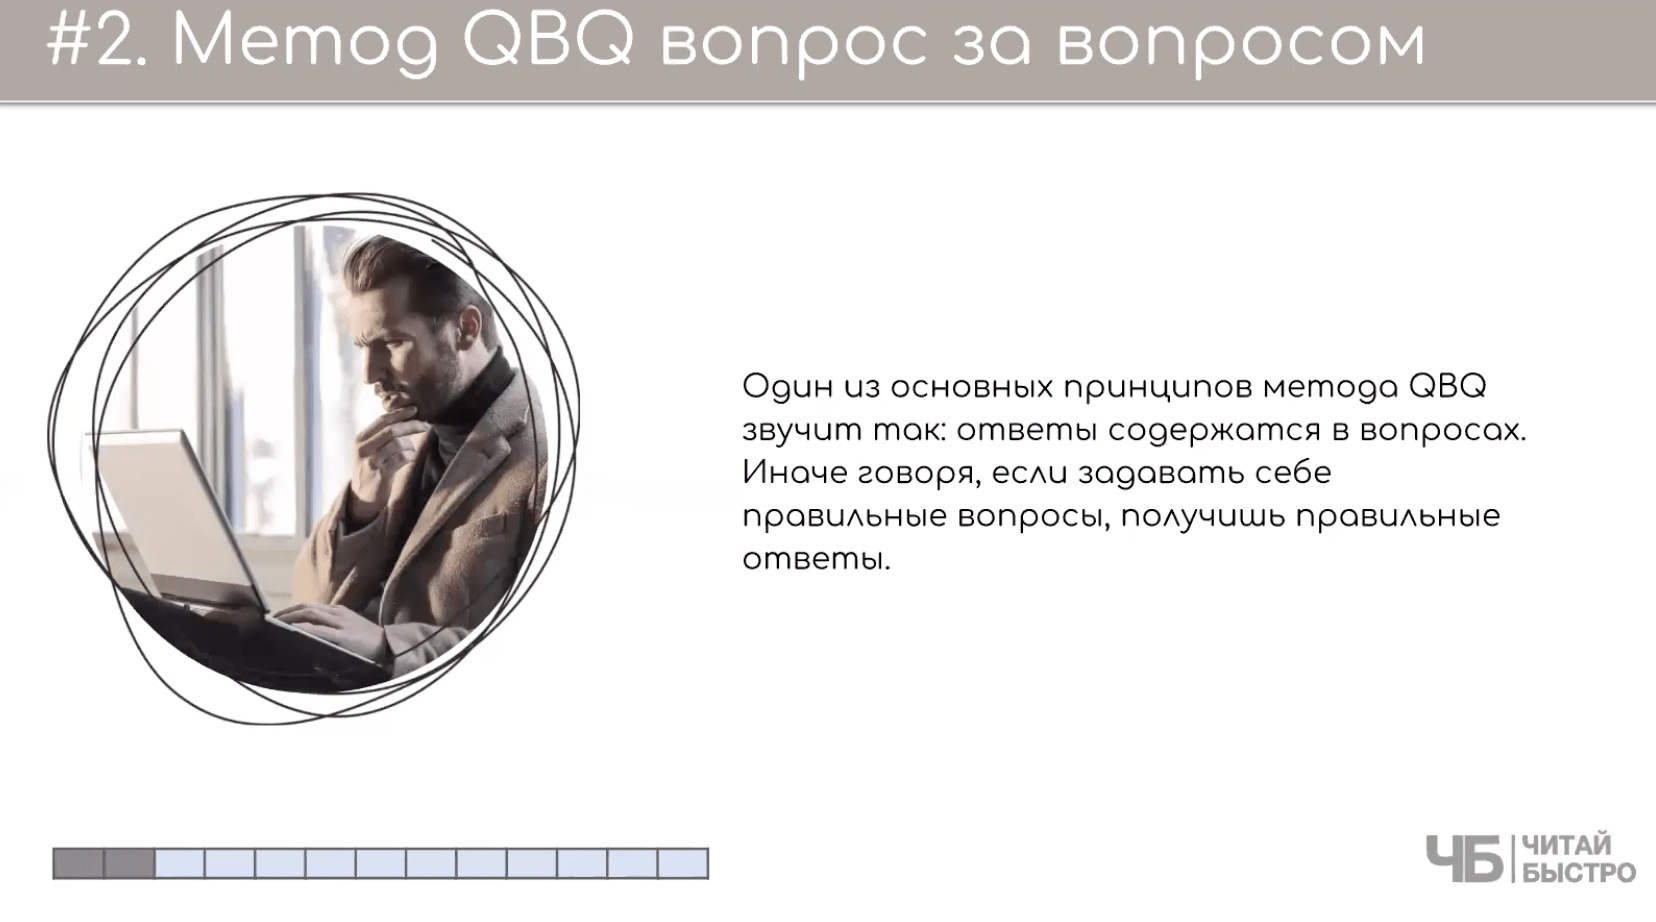 На этом слайде изображен тезис о «Методе QBQ вопрос за вопросом» и иллюстрация мужчины с ноутбуком.